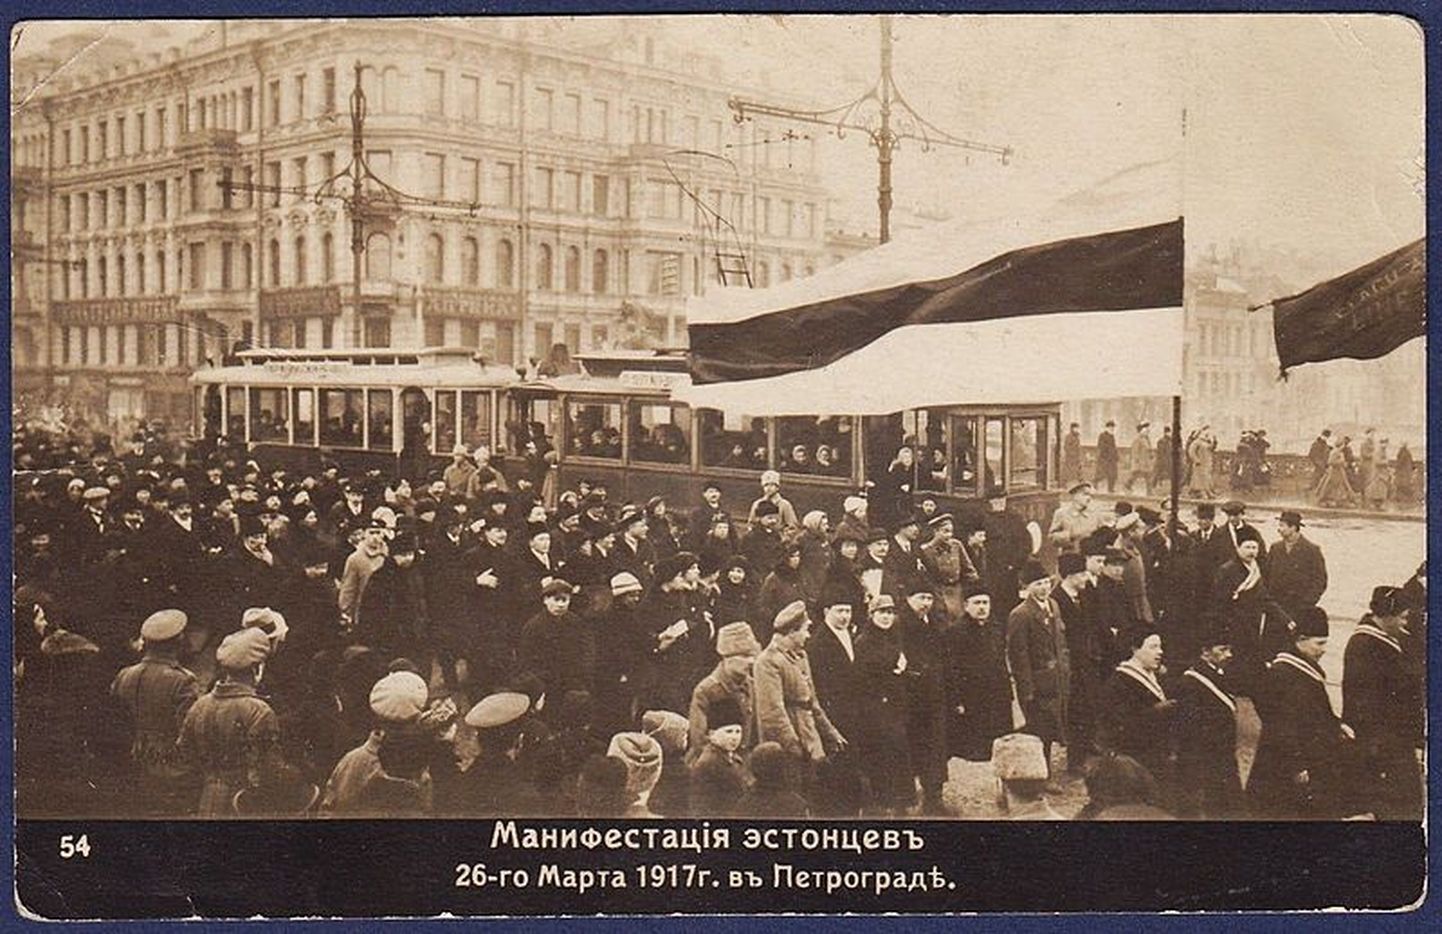 Eestlaste demonstratsioon Petrogradis